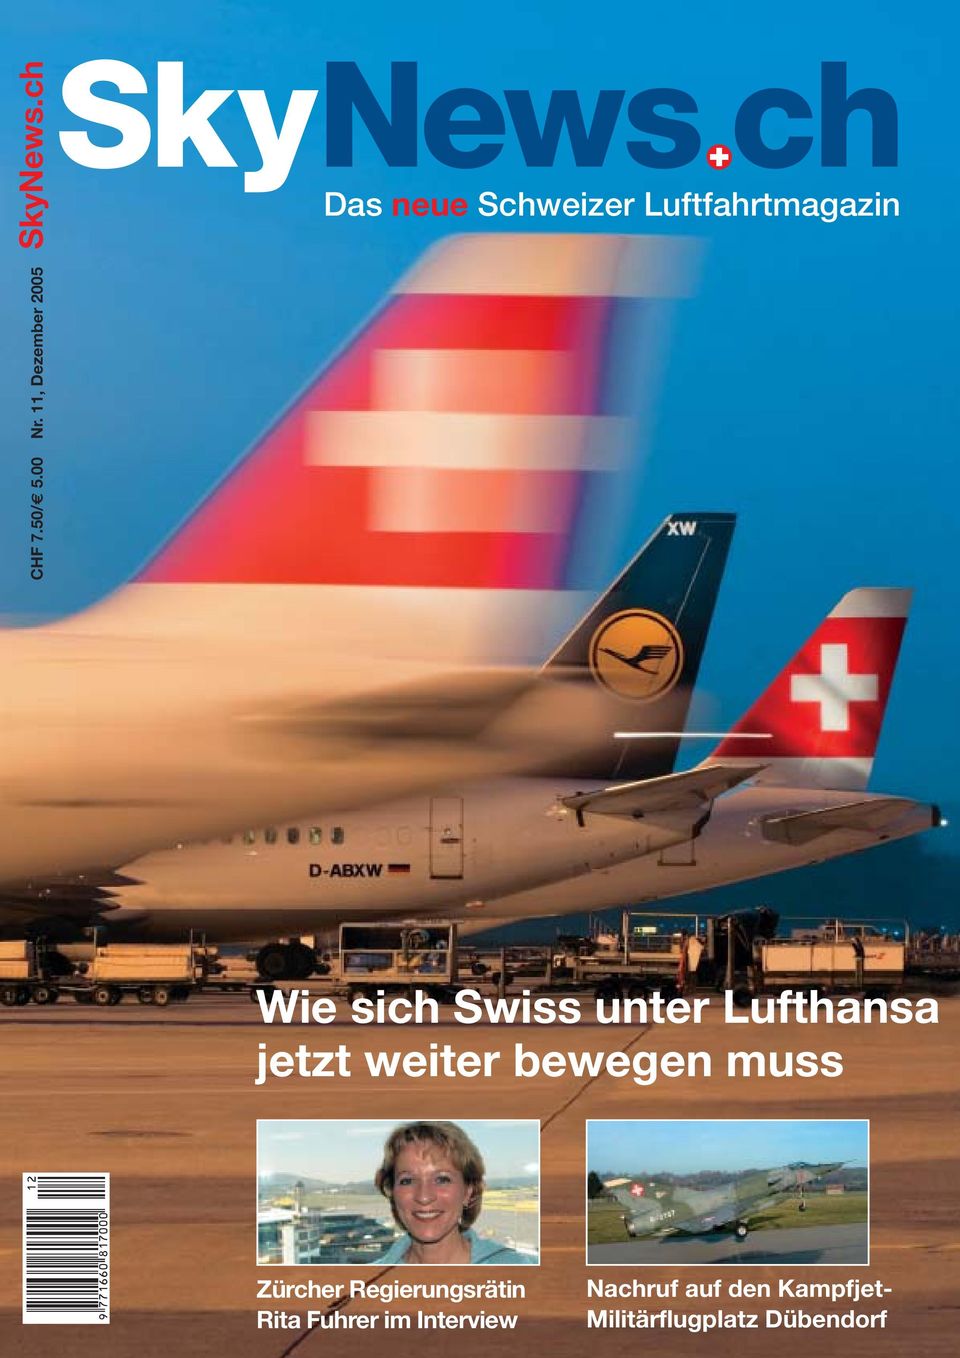 Lufthansa jetzt weiter bewegen muss Zürcher Regierungsrätin